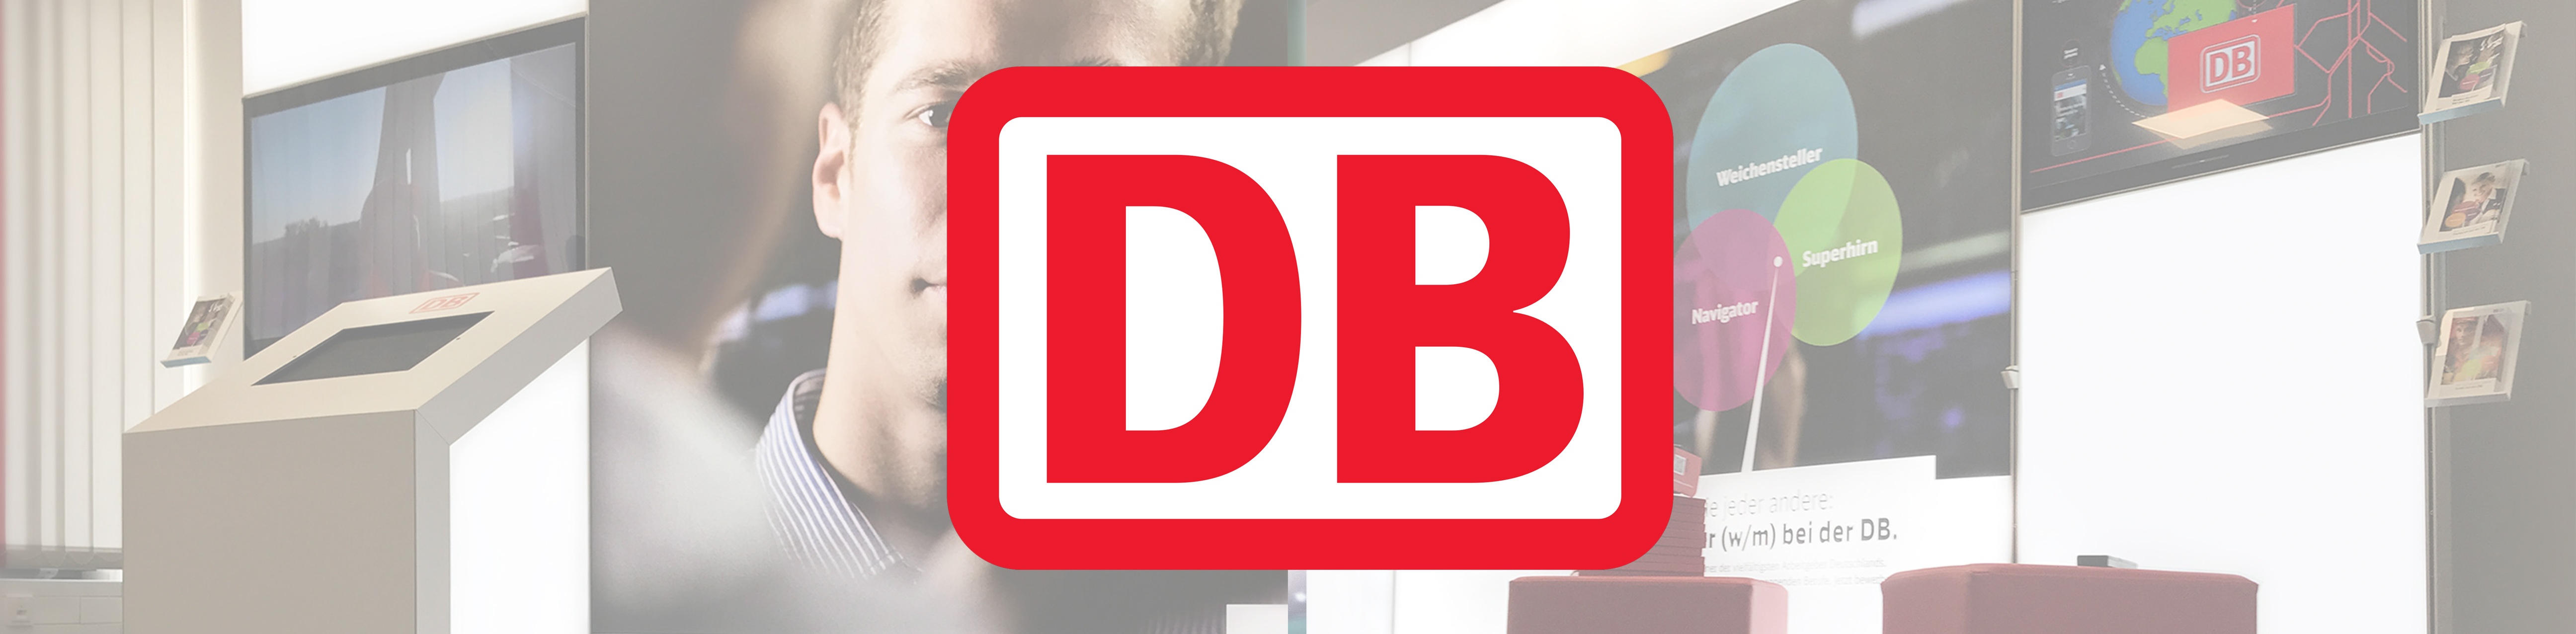 Case Study Deutsche Bahn Header